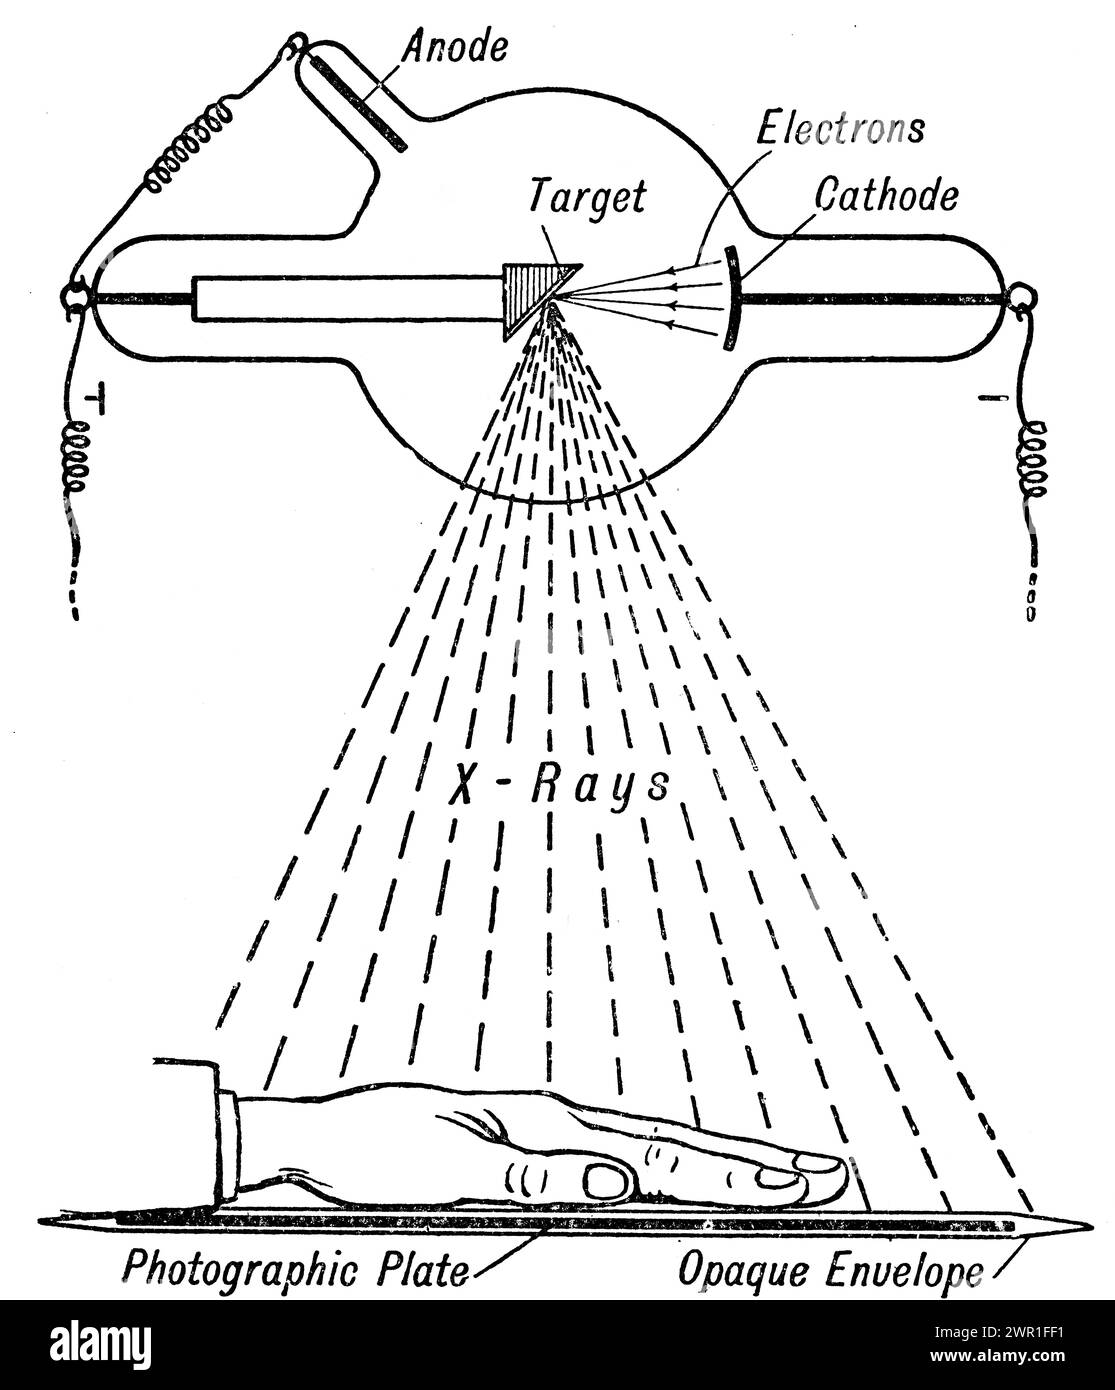 Un diagramma di un tubo di Crookes. Un tubo di Crookes è un tubo sperimentale a scarica elettrica, con vuoto parziale, inventato dal fisico inglese William Crookes (1832-1919) e altri intorno al 1869-1875, in cui sono stati scoperti raggi catodici, flussi di elettroni. Wilhelm Röntgen (1845-1923), scoprì i raggi X usando il tubo di Crookes nel 1895. Foto Stock